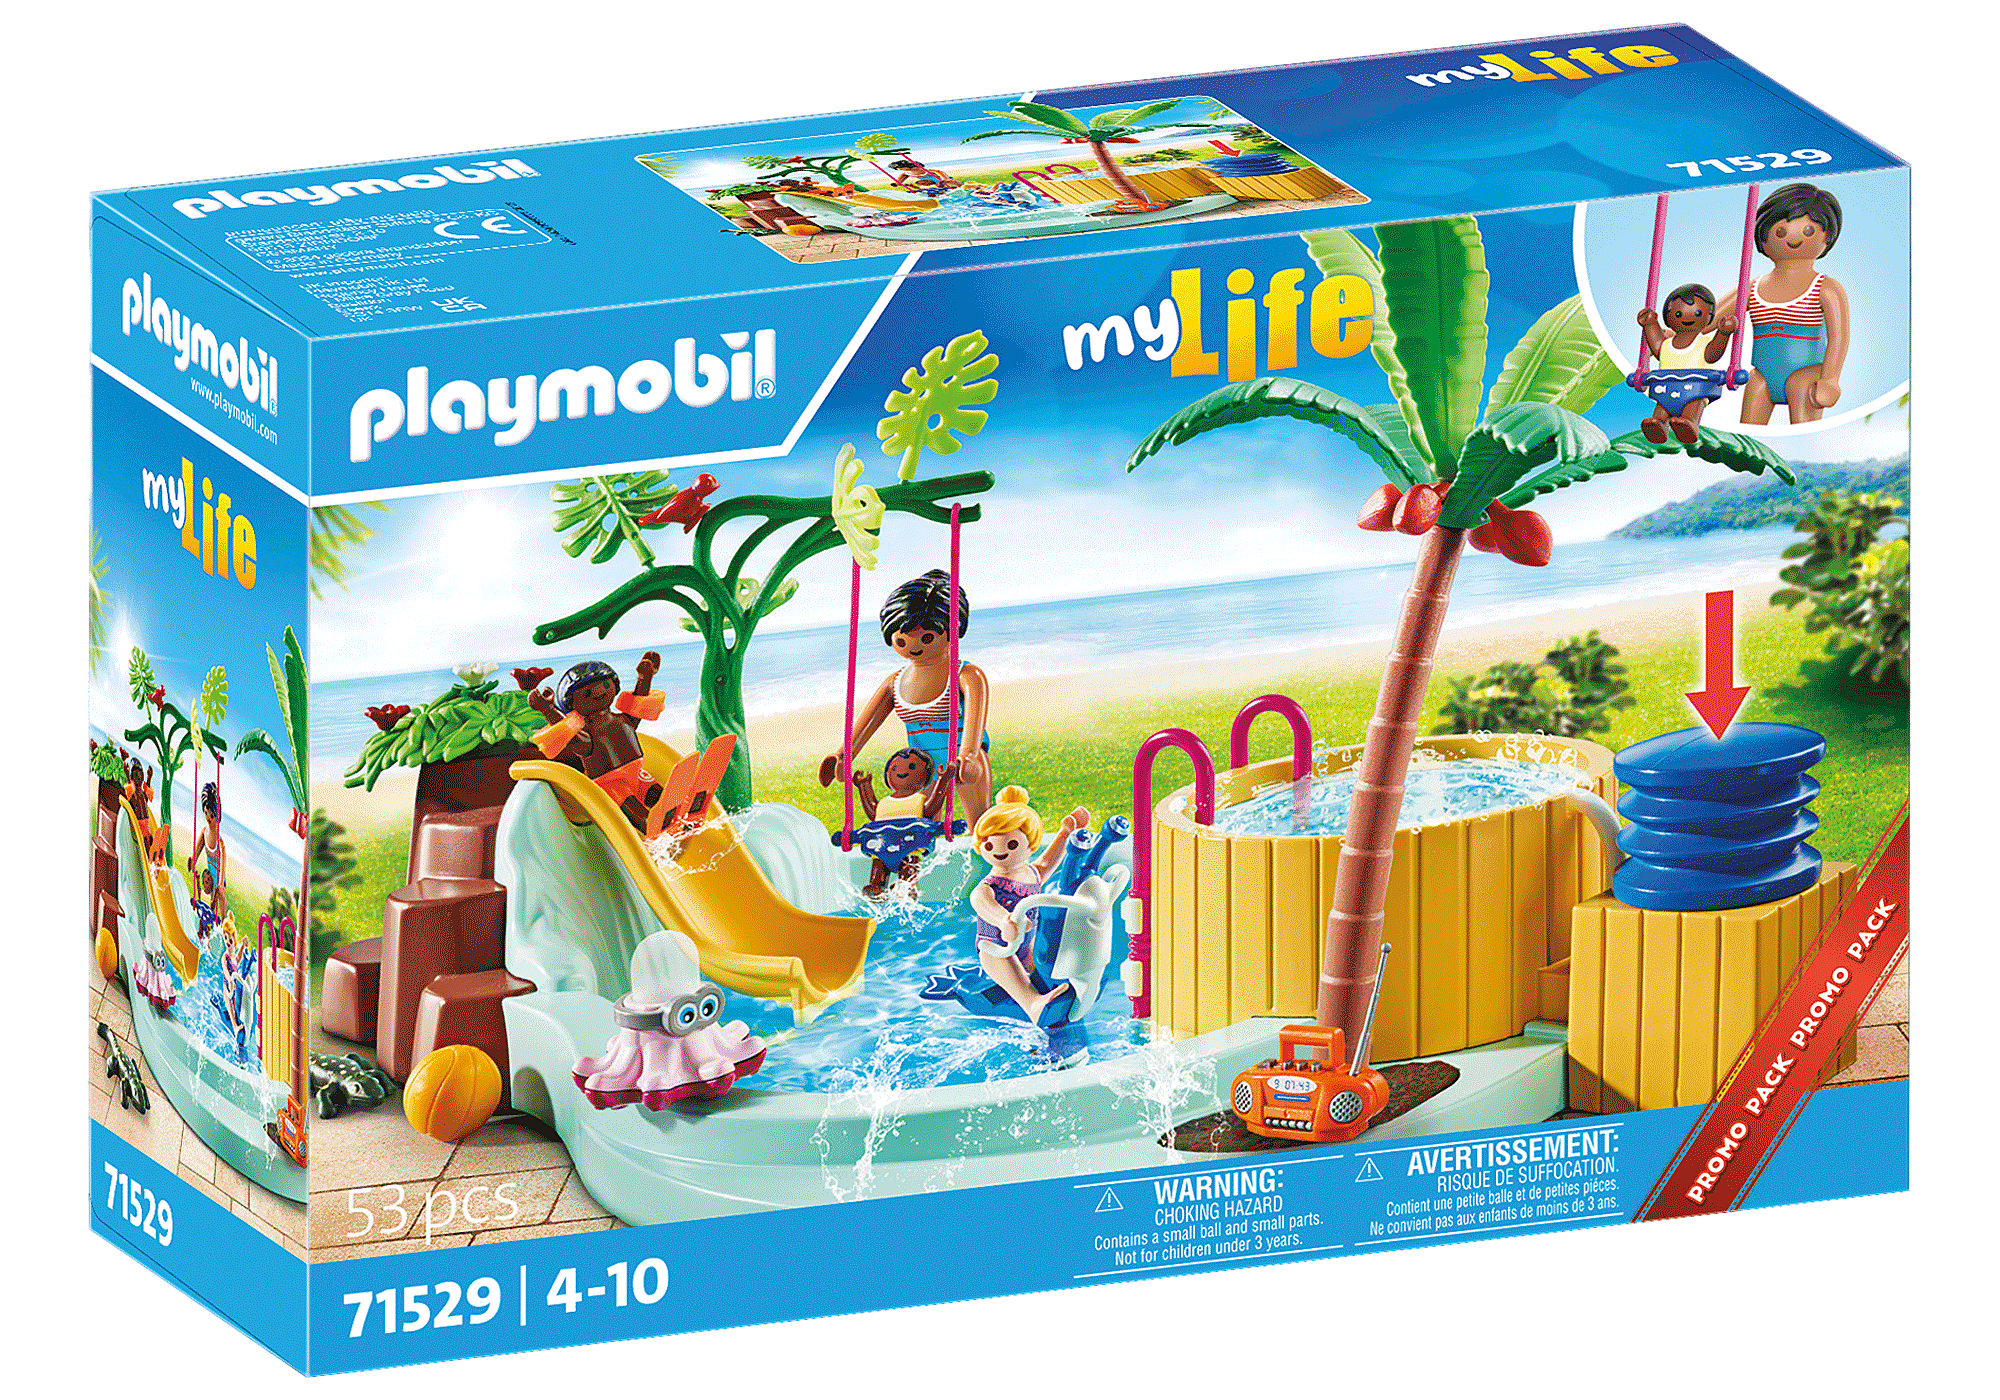 Playmobil Family Fun Piscina con Accesorios